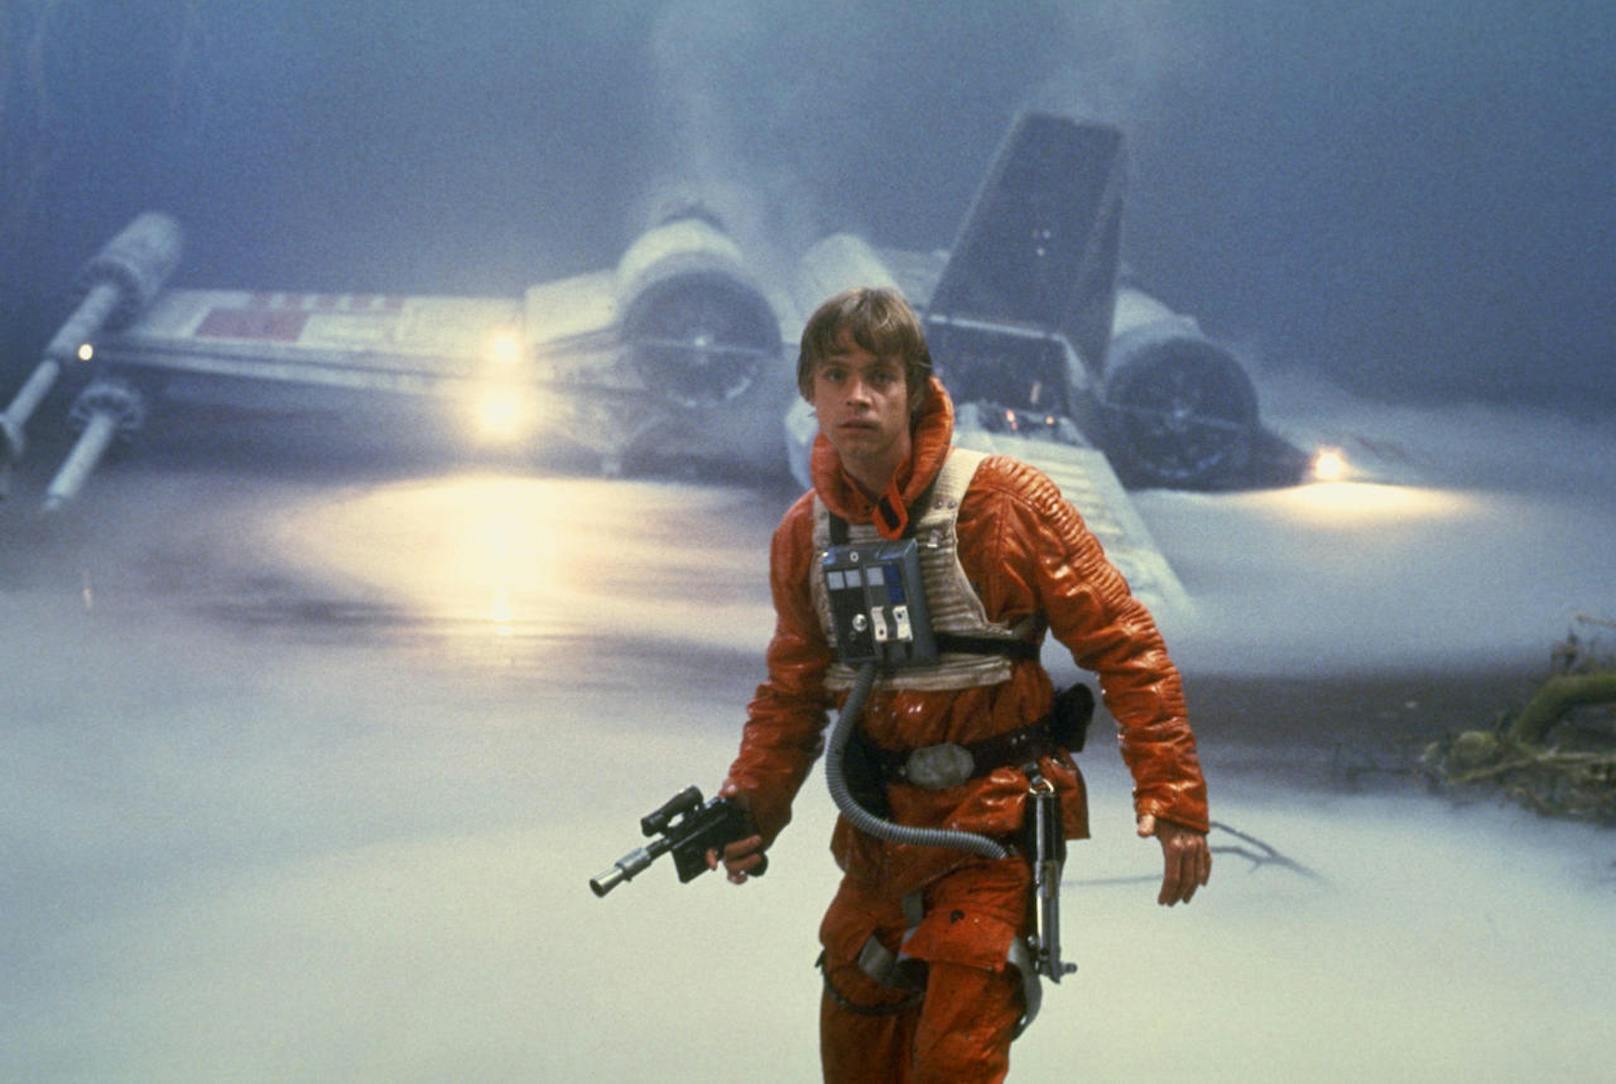 Luke Skywalker (Mark Hamill) sucht in "Das Imperium schlägt zurück" einen Jedi-Meister, der ihn ausbilden kann.